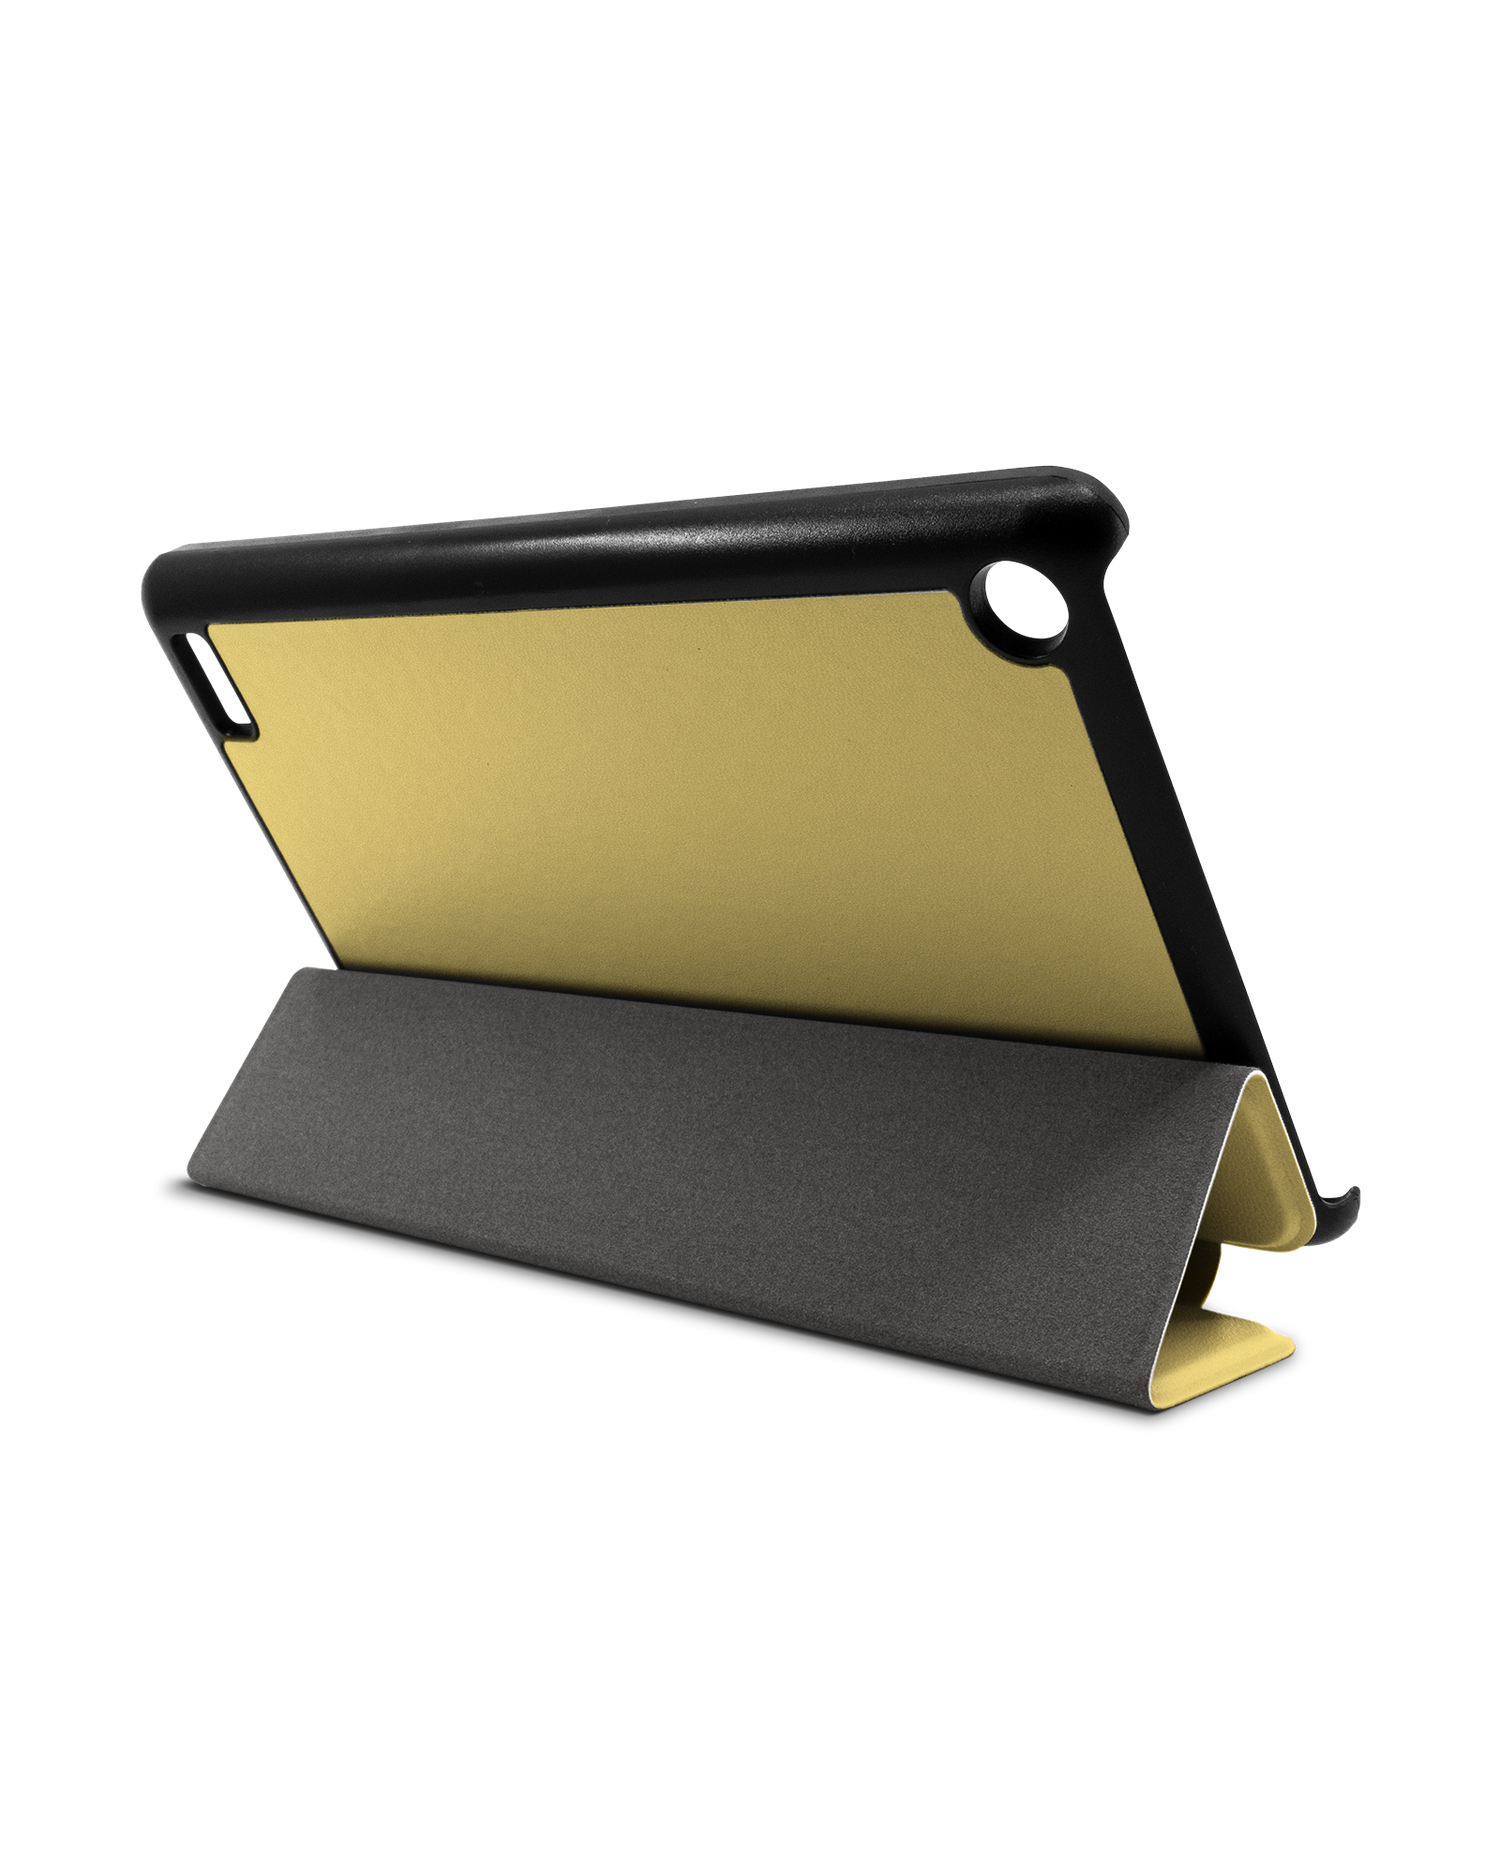 LIGHT YELLOW Tablet Smart Case für Amazon Fire 7: Aufgestellt im Querformat